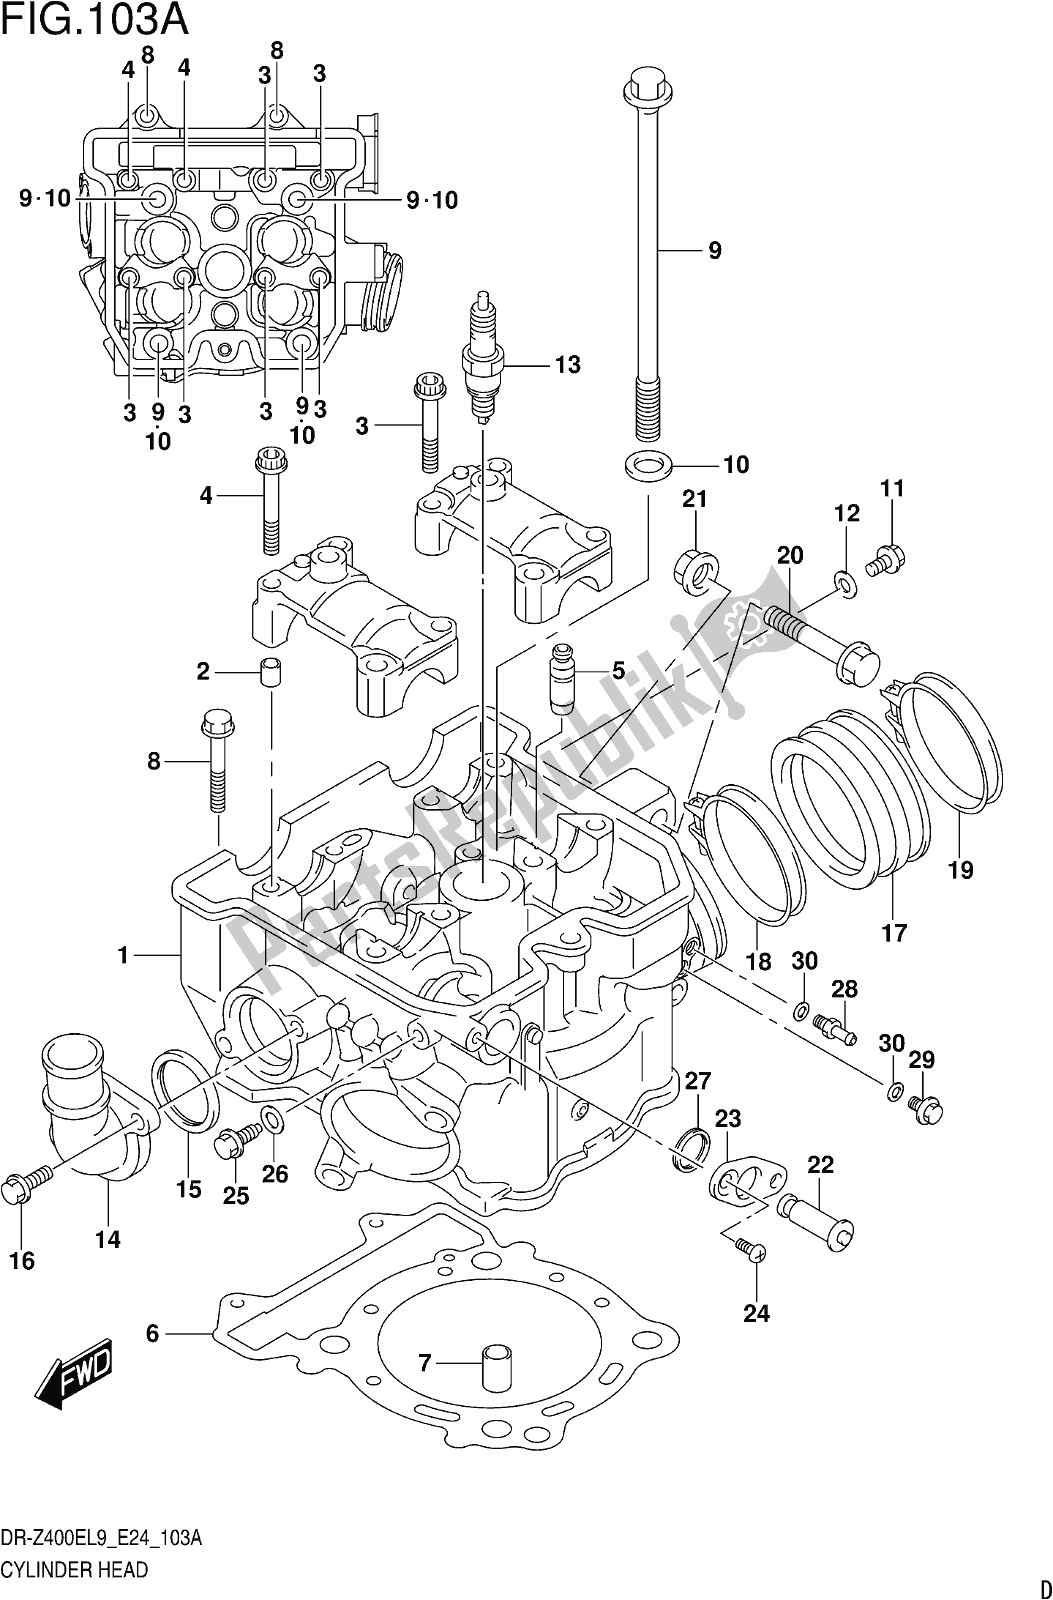 Alle onderdelen voor de Fig. 103a Cylinder Head van de Suzuki DR-Z 400E 2019